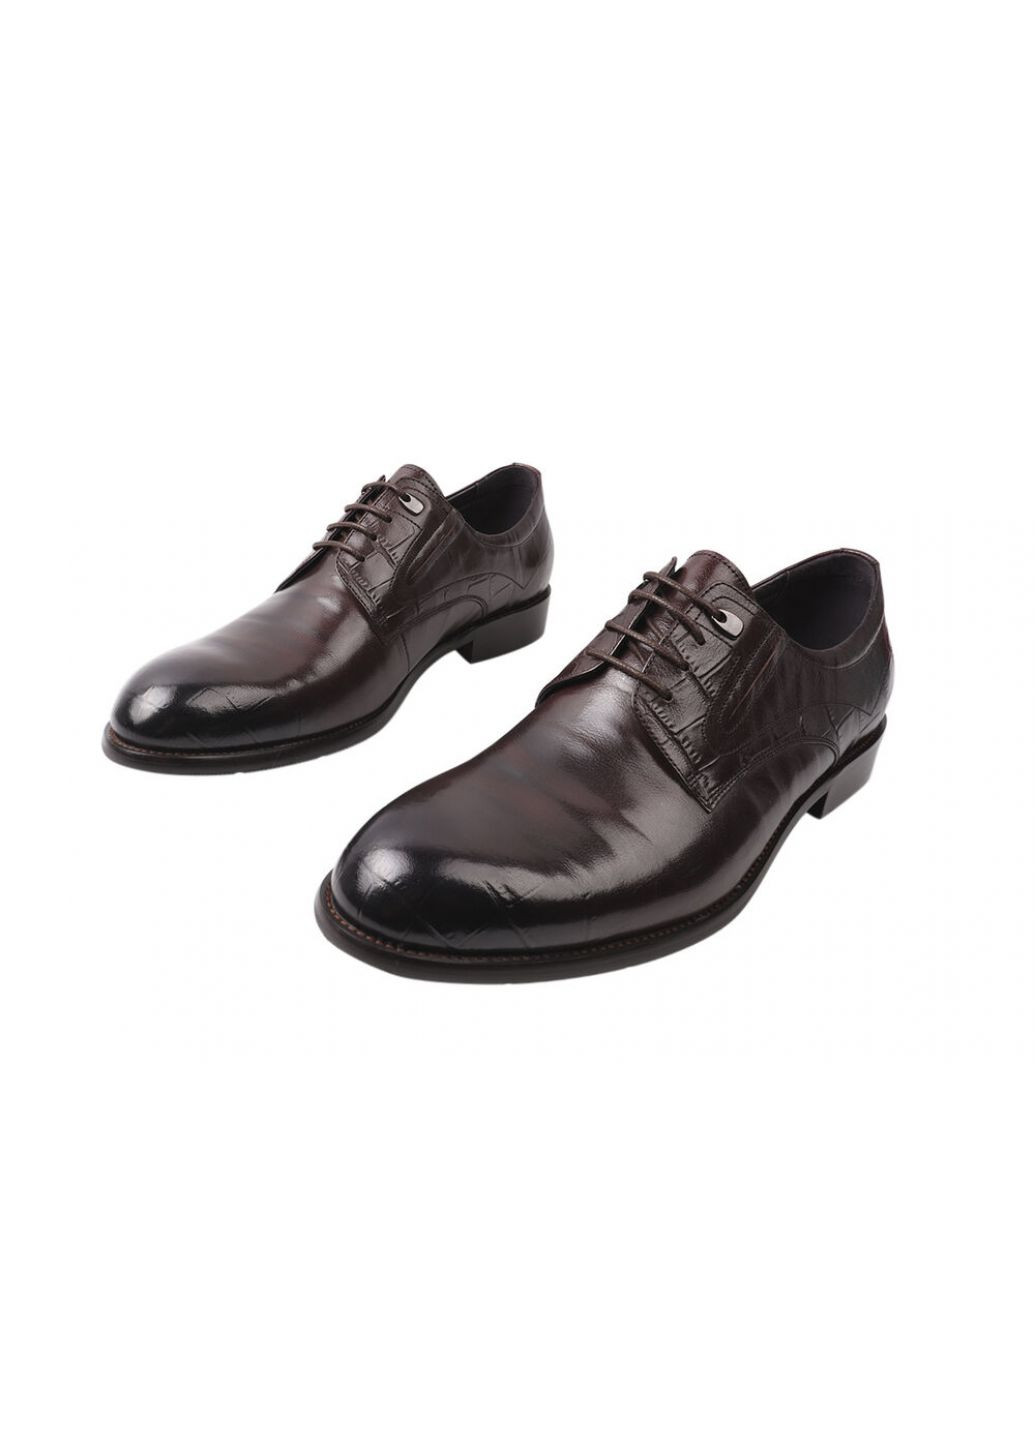 Коричневые туфли мужские из натуральной кожи, на низком ходу, на шнуровке, цвет коричневый, Cosottinni